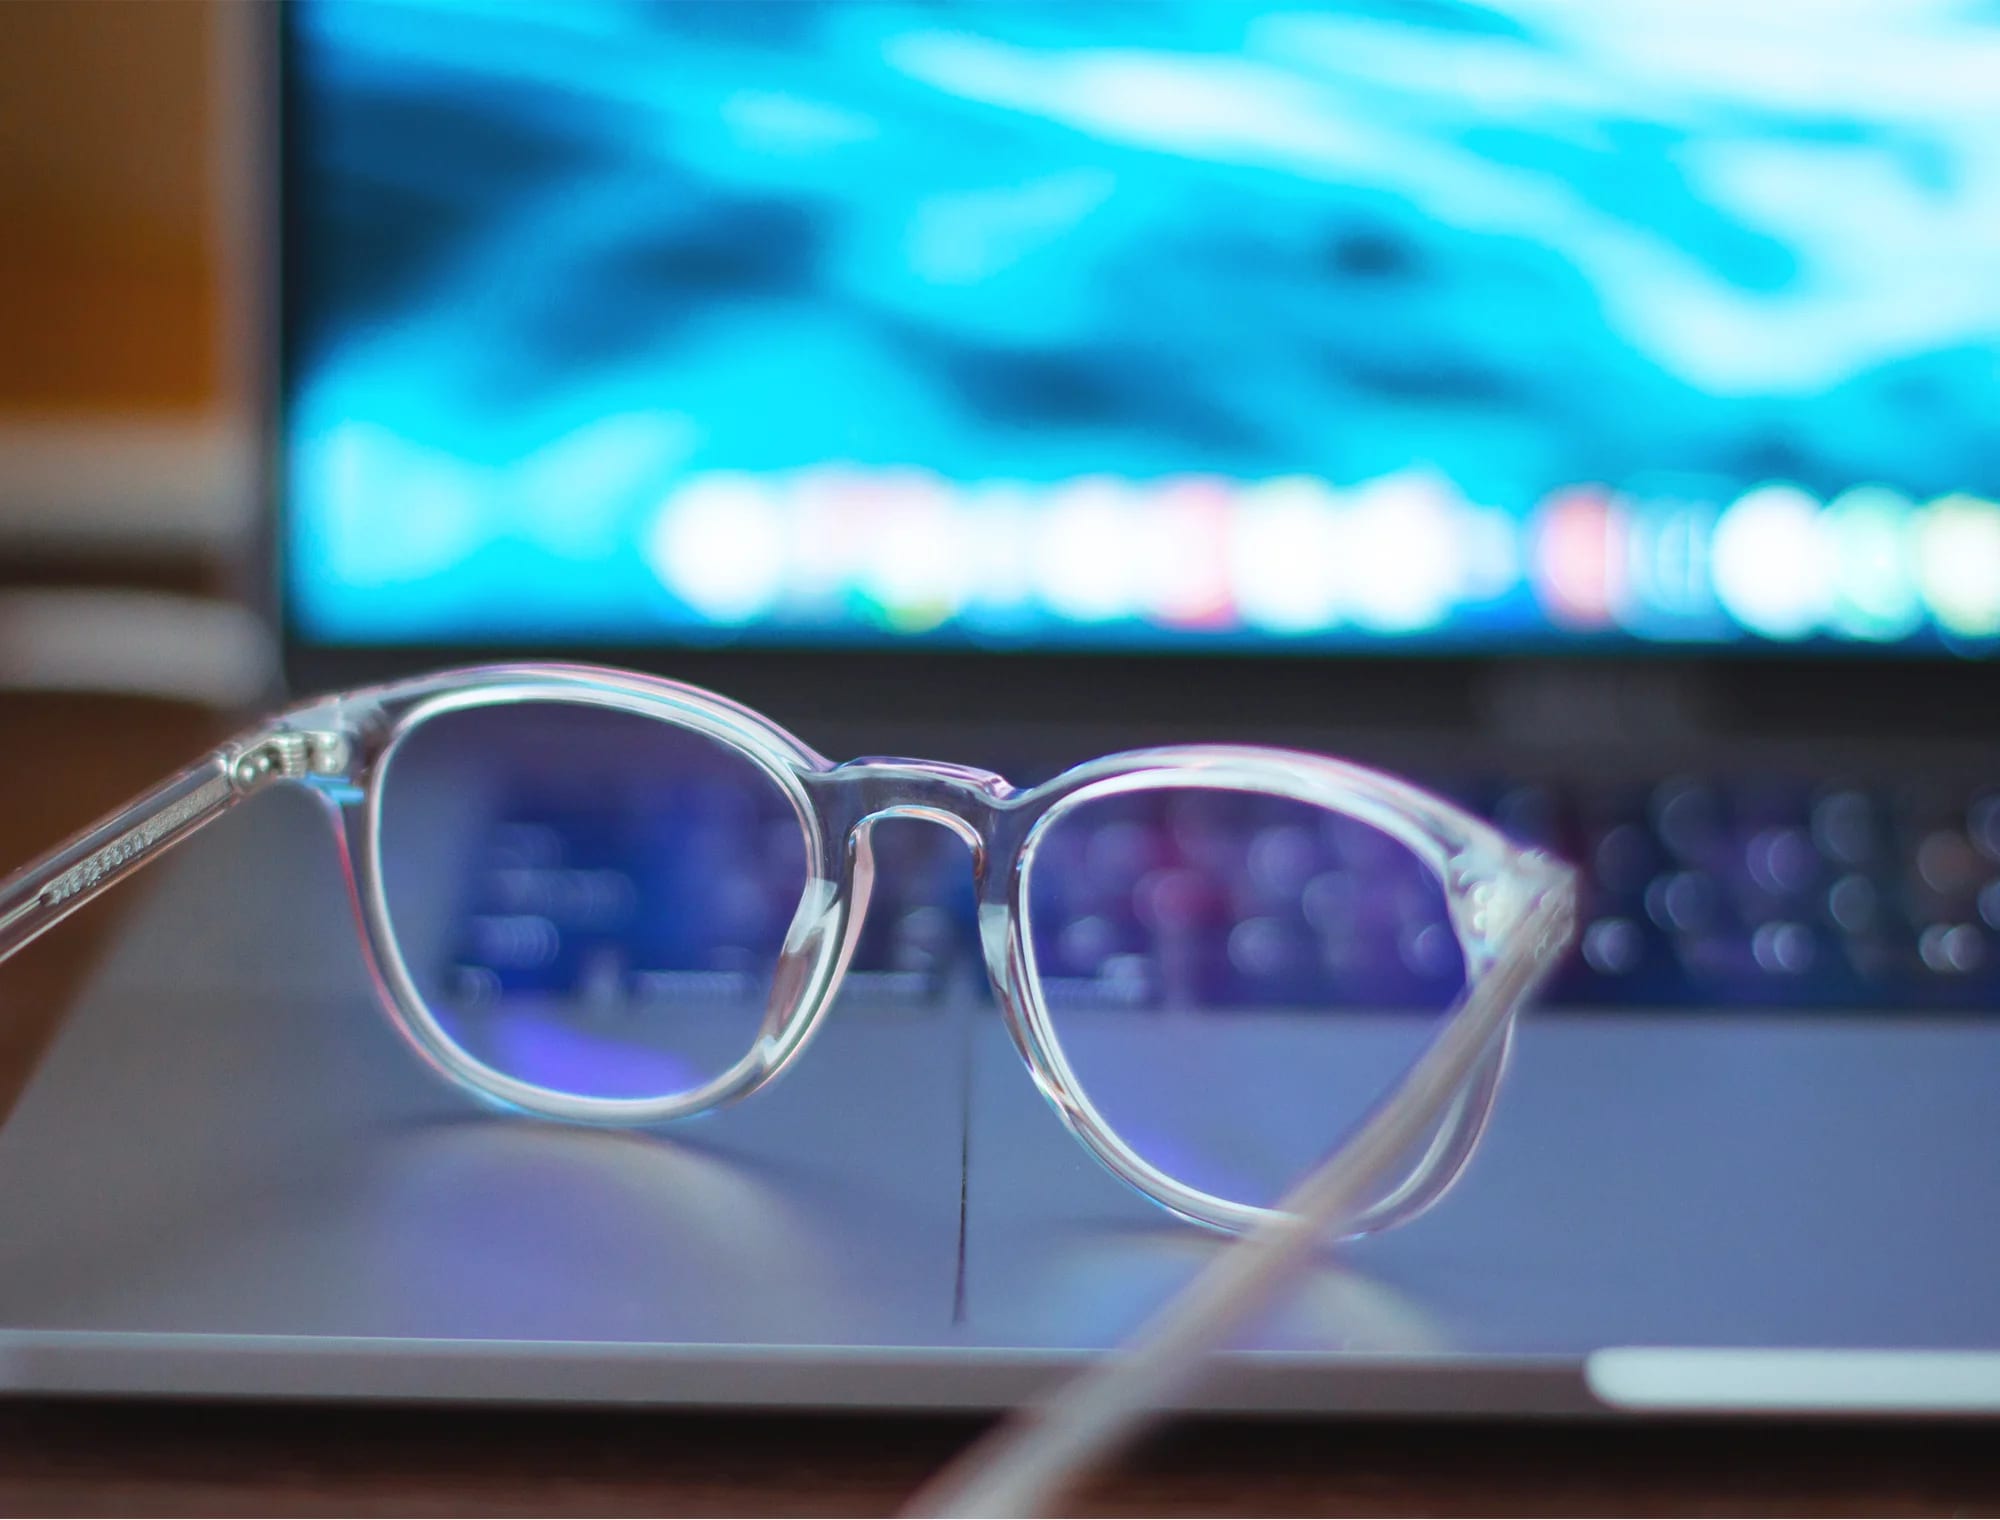 Gjennomsiktige briller ligger på en bærbar datamaskin med blått lys.